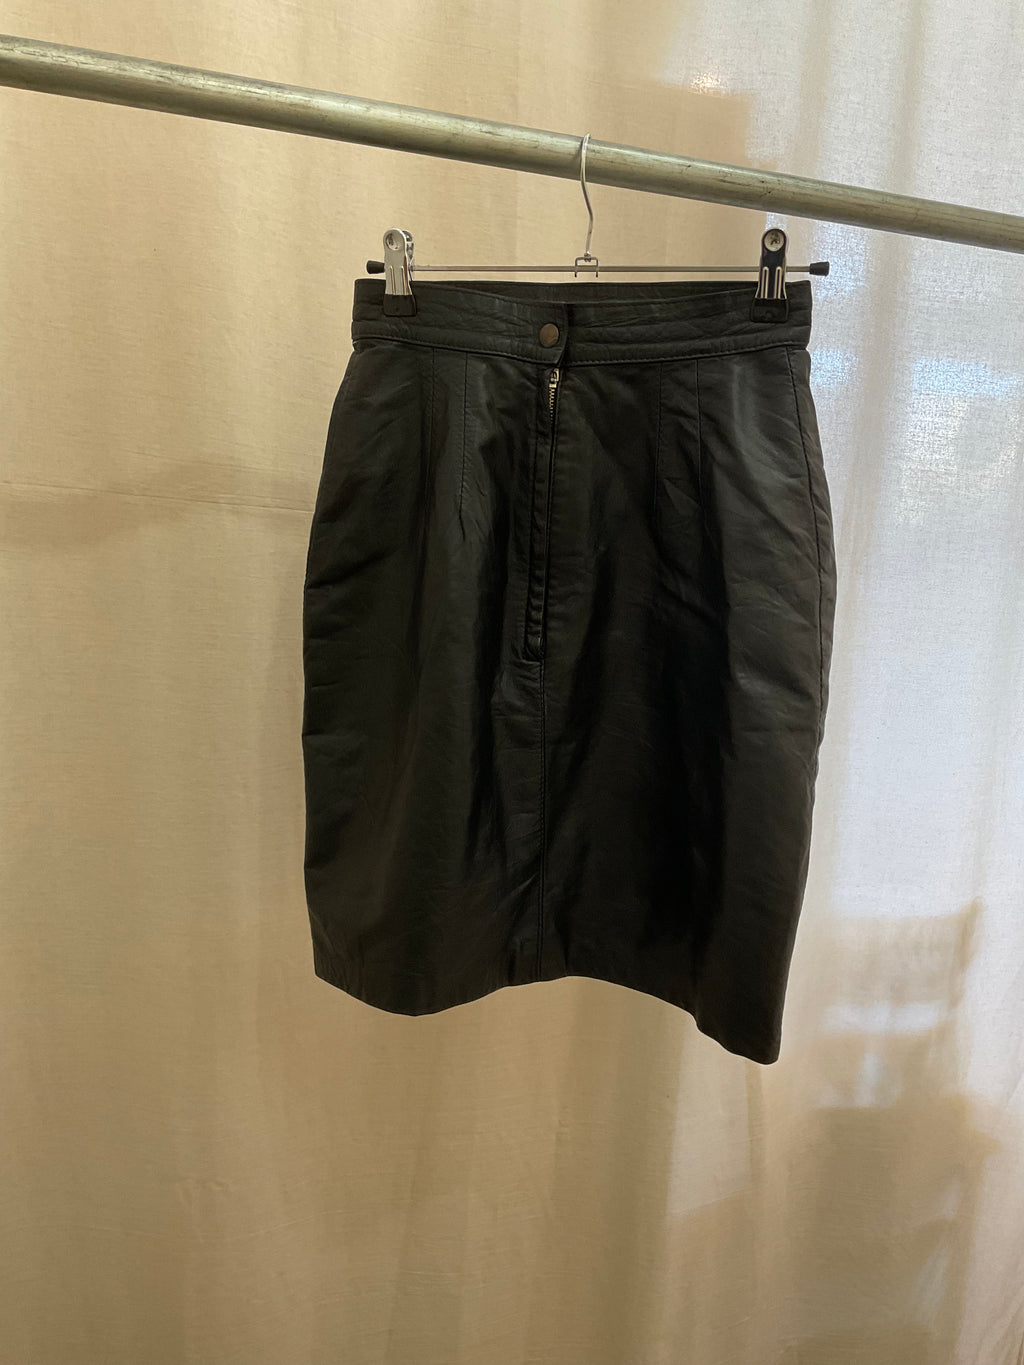 No Label Black Leather Skirt Sz 10 (best fit sz 6)